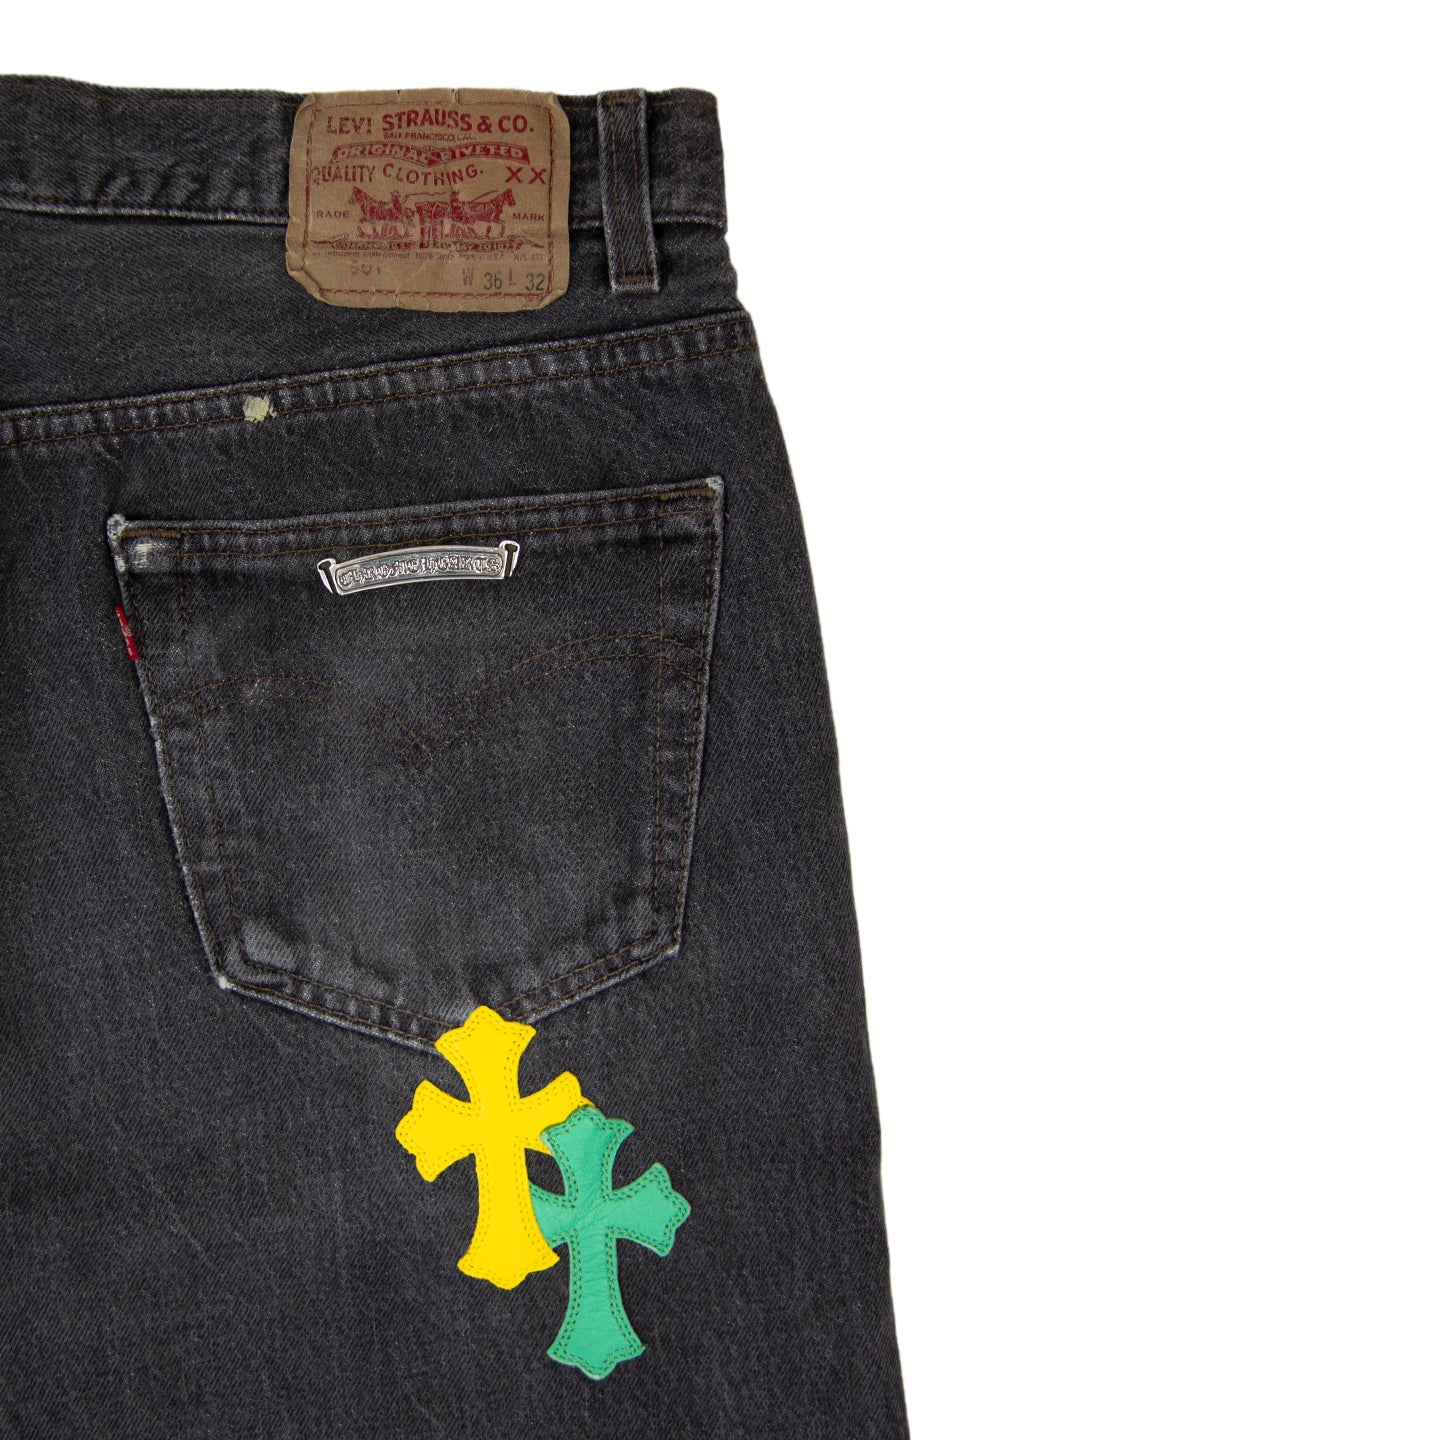 Chrome Hearts 1/1 Carpenter Multicolor Patch Jeans